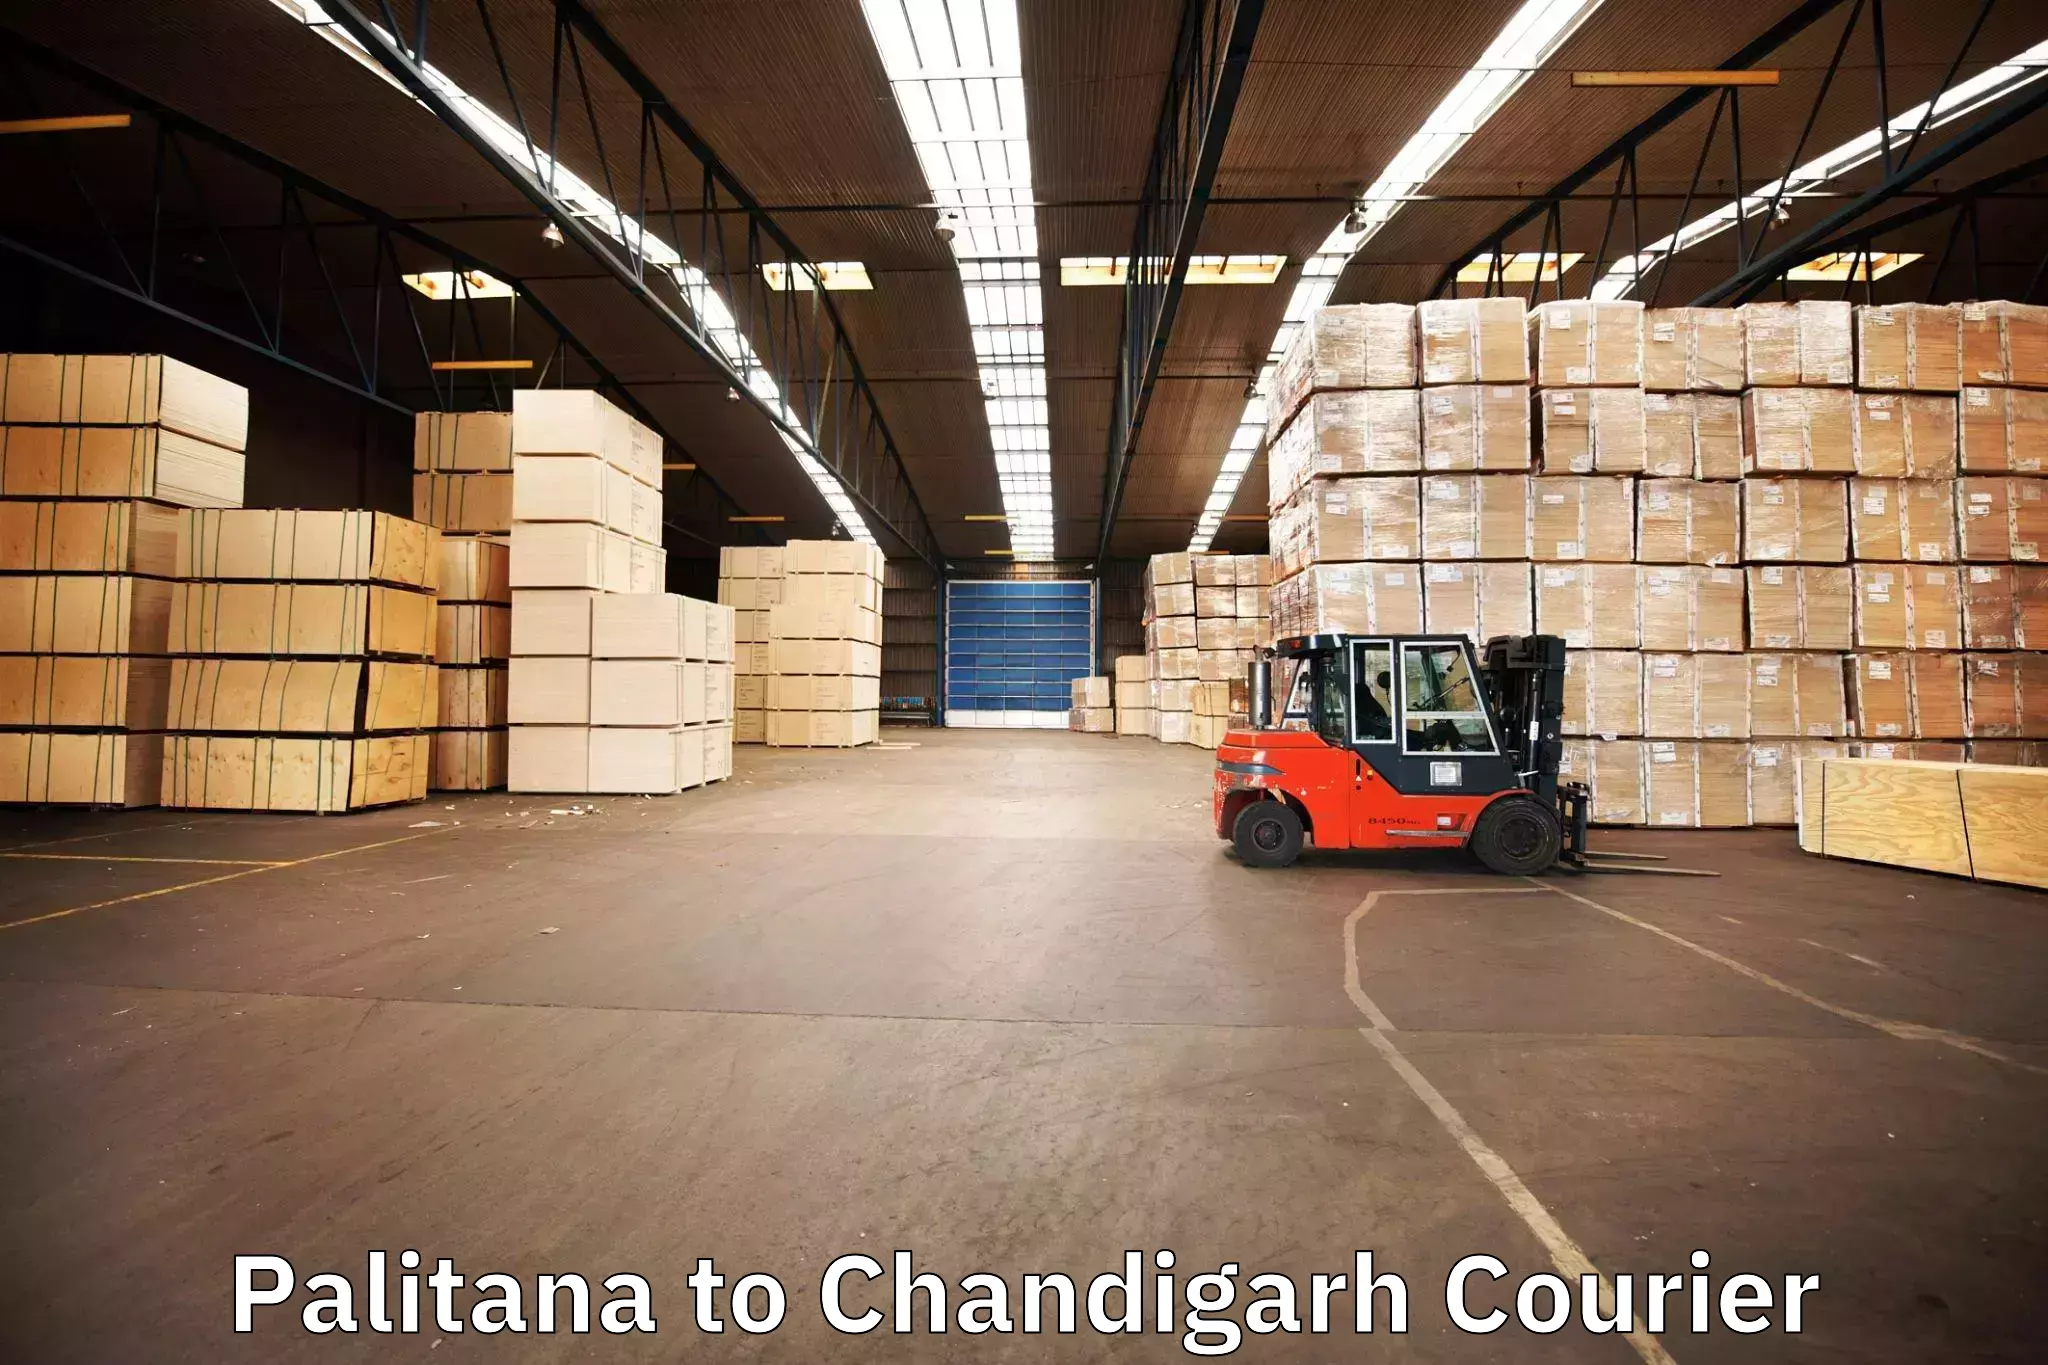 Professional moving company Palitana to Panjab University Chandigarh